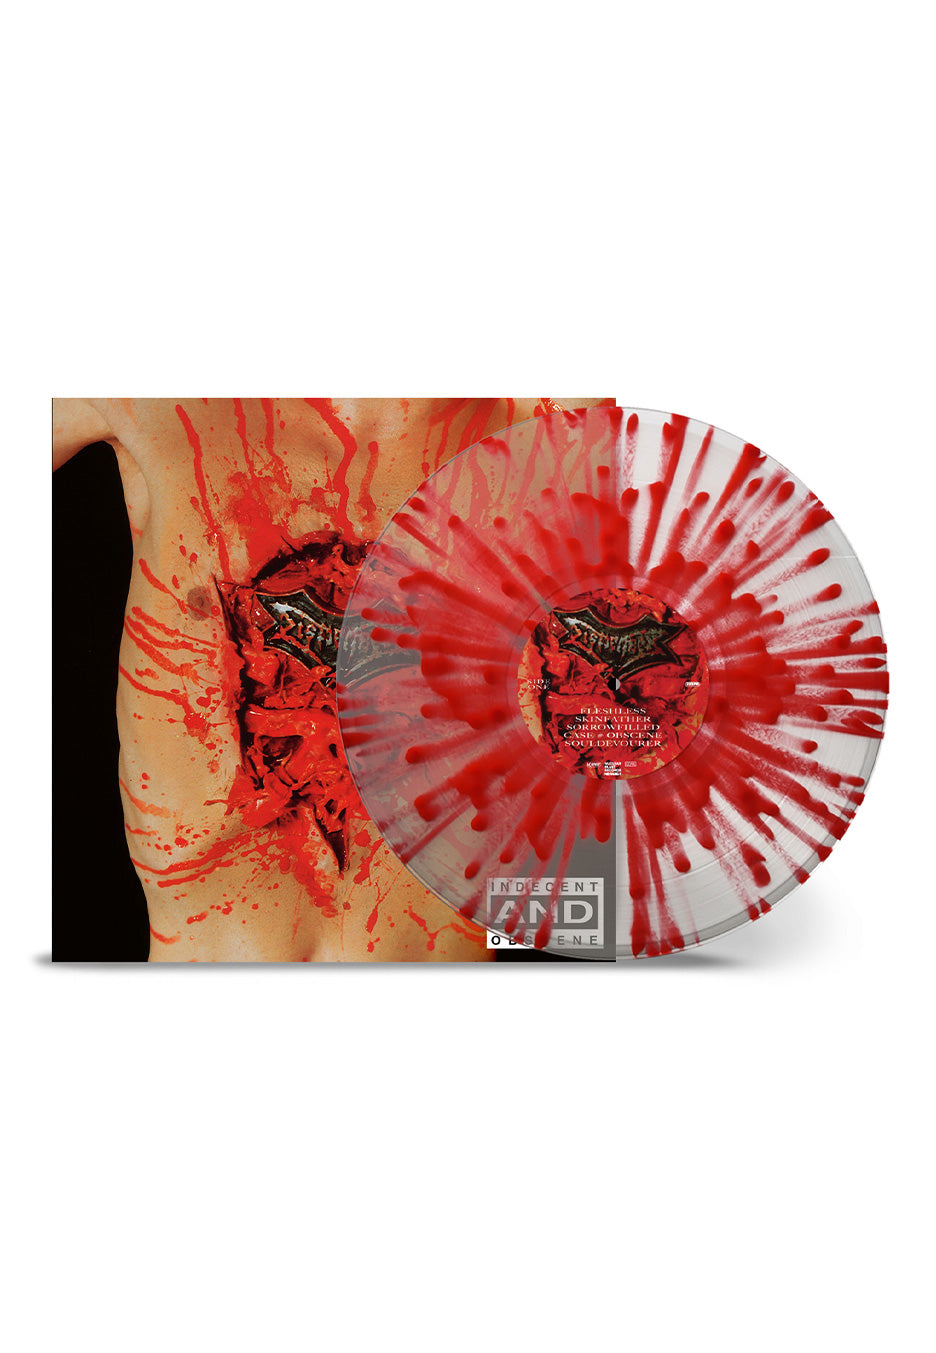 Dismember - Indecent & Obscene Ltd. Clear/Red - Splattered Vinyl